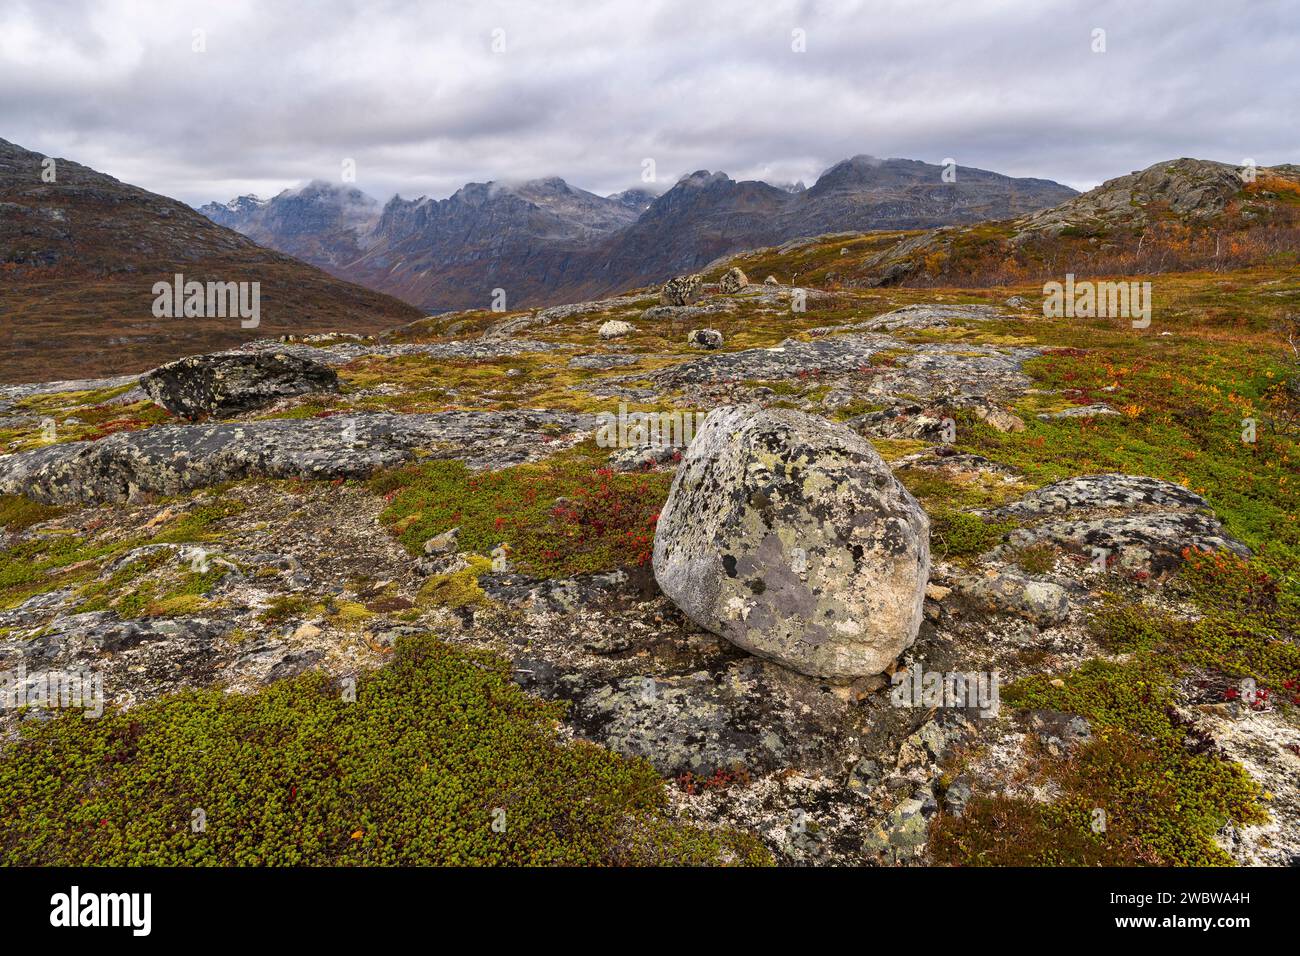 Einzelner Stein, Felsbrocken, abgerundeter Gletscherstein auf der Insel Kvaløya in Troms, Norwegen. Tiefe Gletschertäler mit herbstbunten Bäumen und felsigem Gipfel Stockfoto